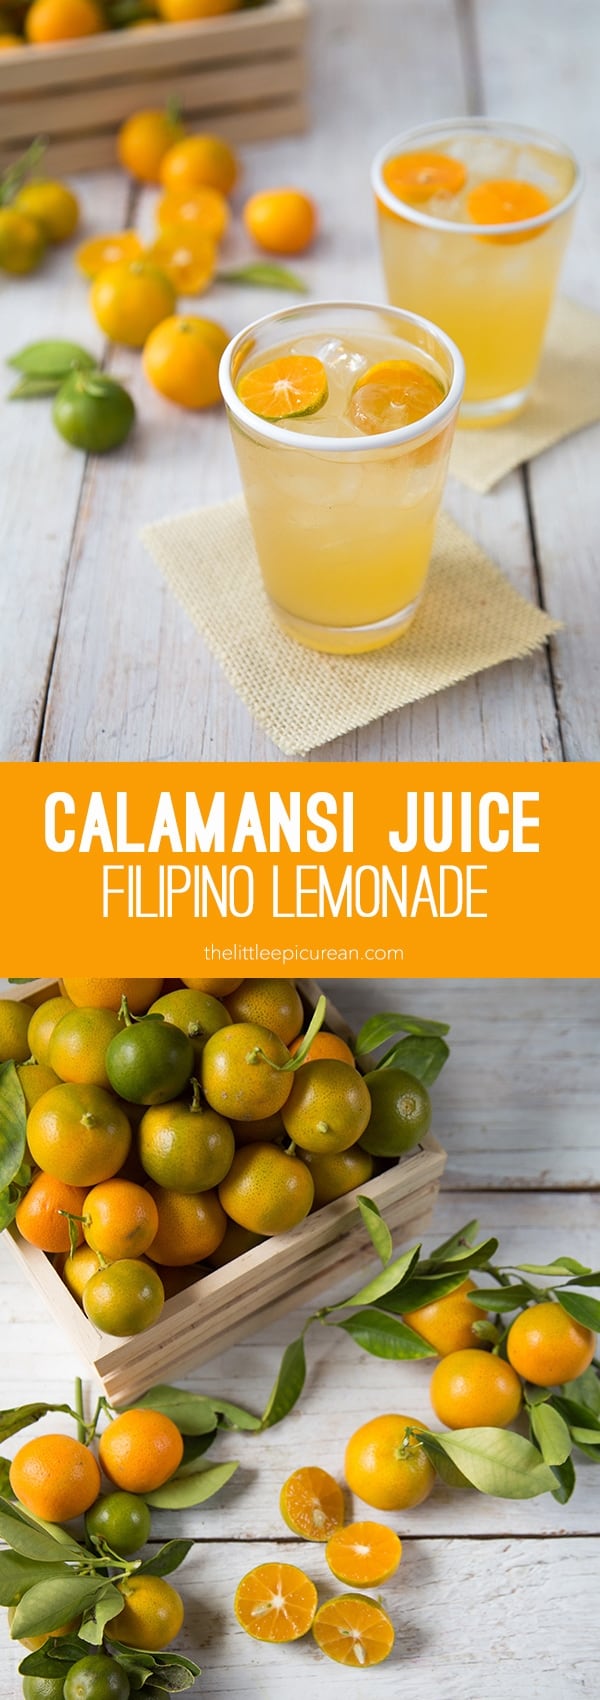 Calamansi Juice (FIlipino Lemonade)